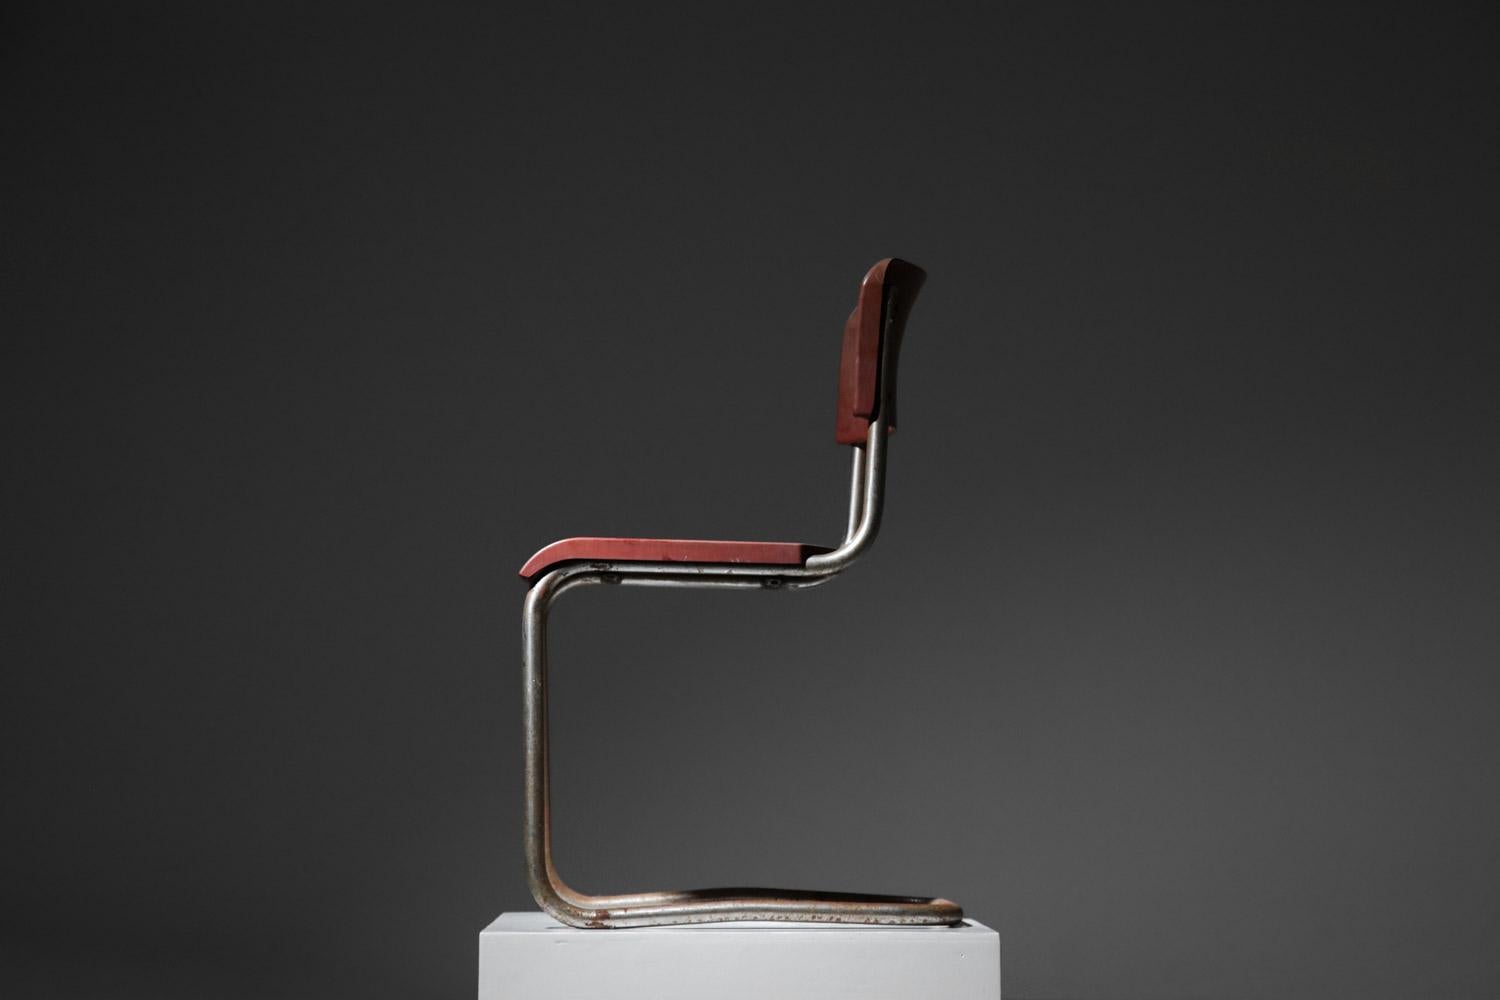 French chrome tube bakelite chair in style of Emile Guillot art deco modernist breuer For Sale